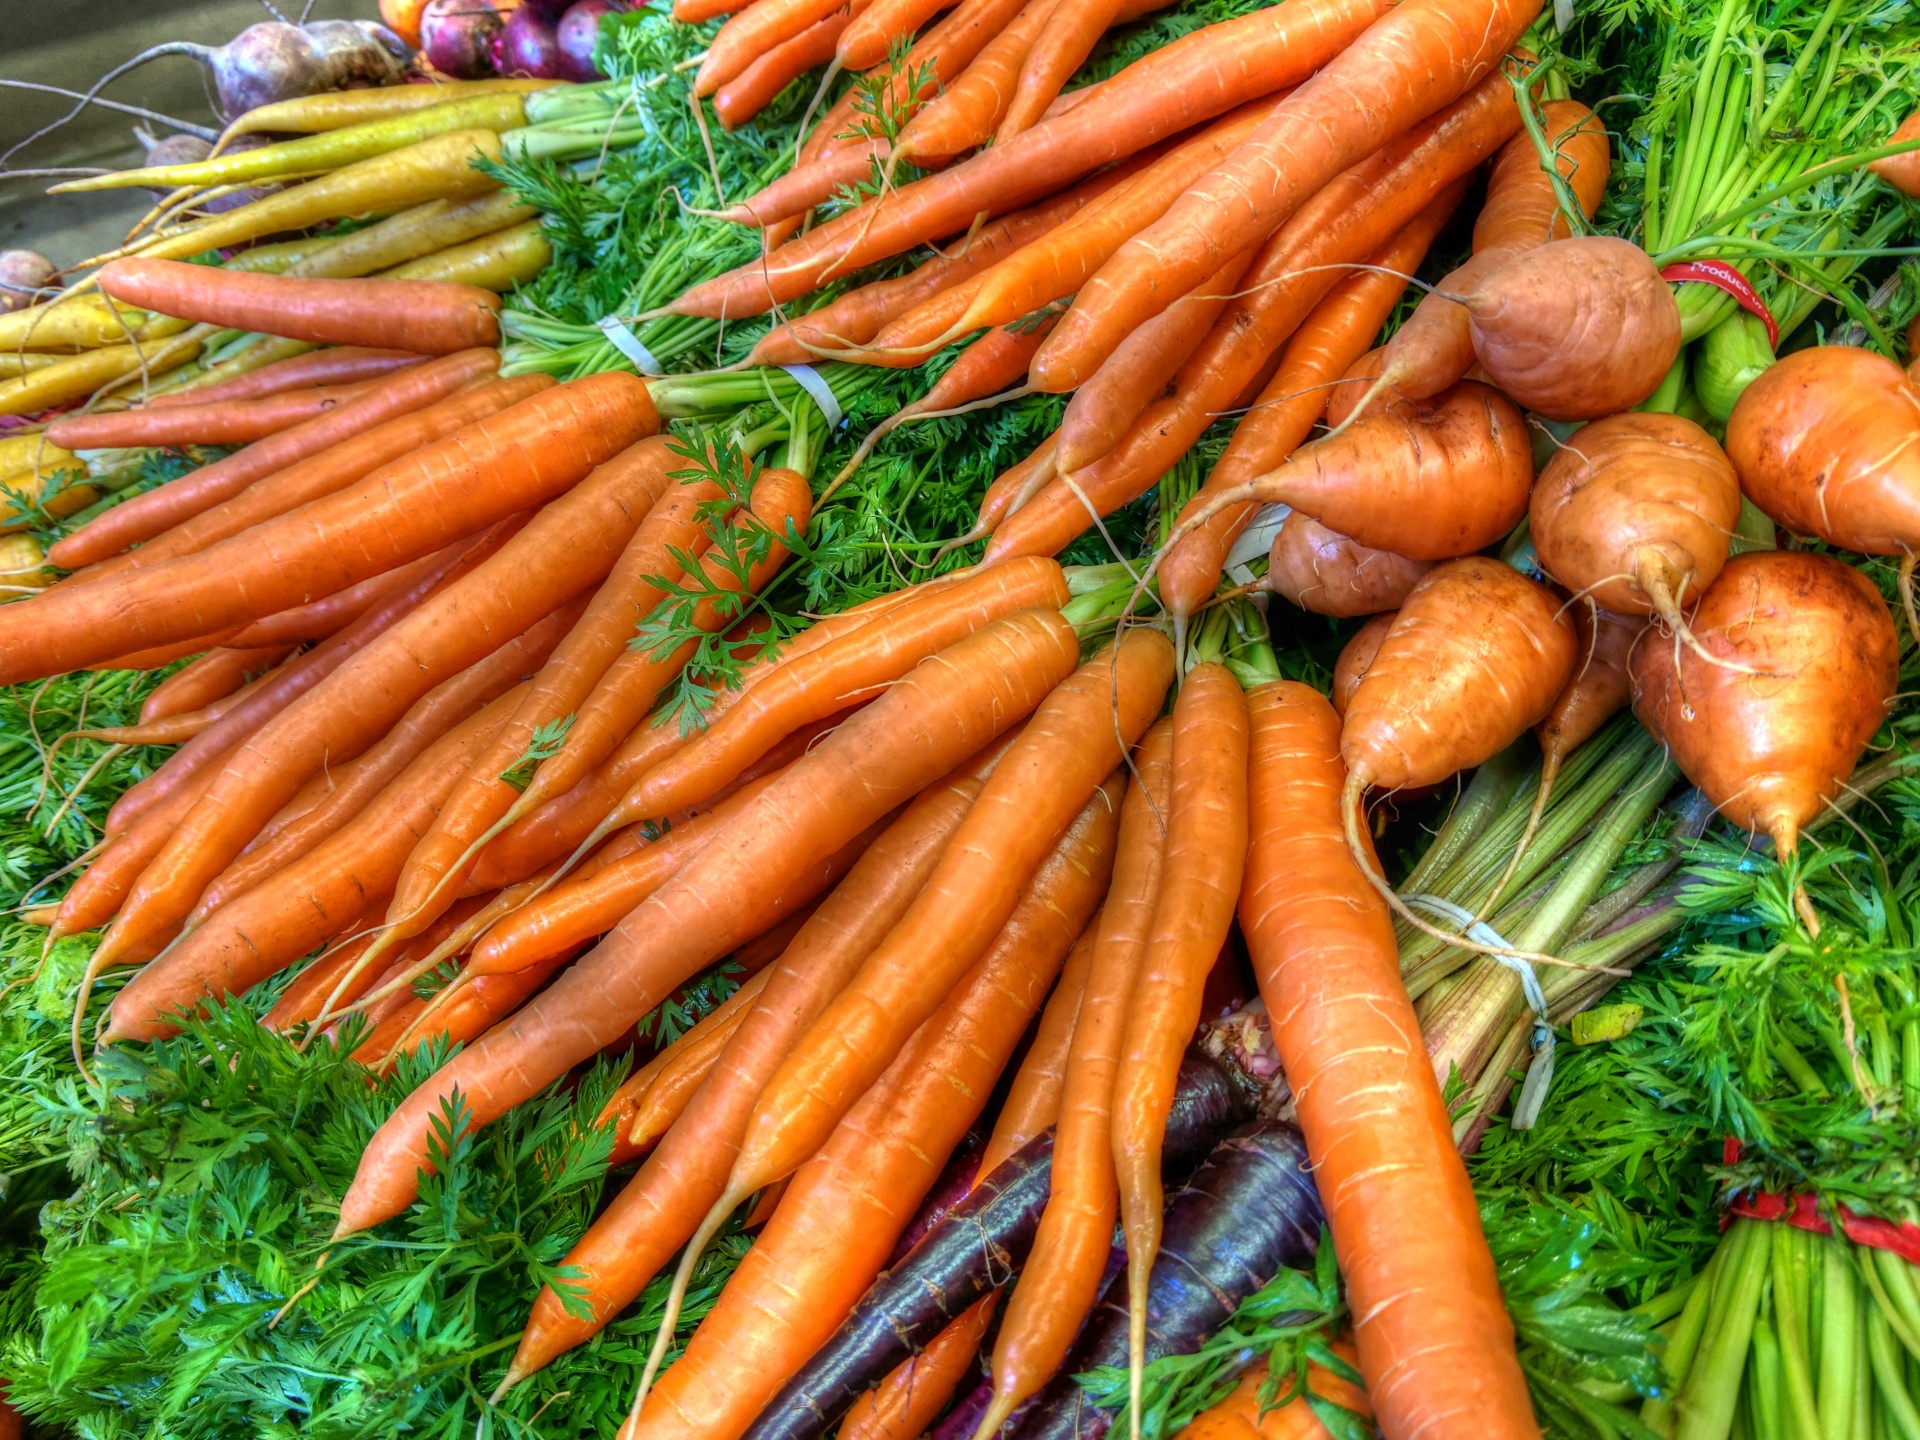 Download free photo of Carrot,carrots,vegetable,vegan,Kev noj qab haus huv - from needpix.com